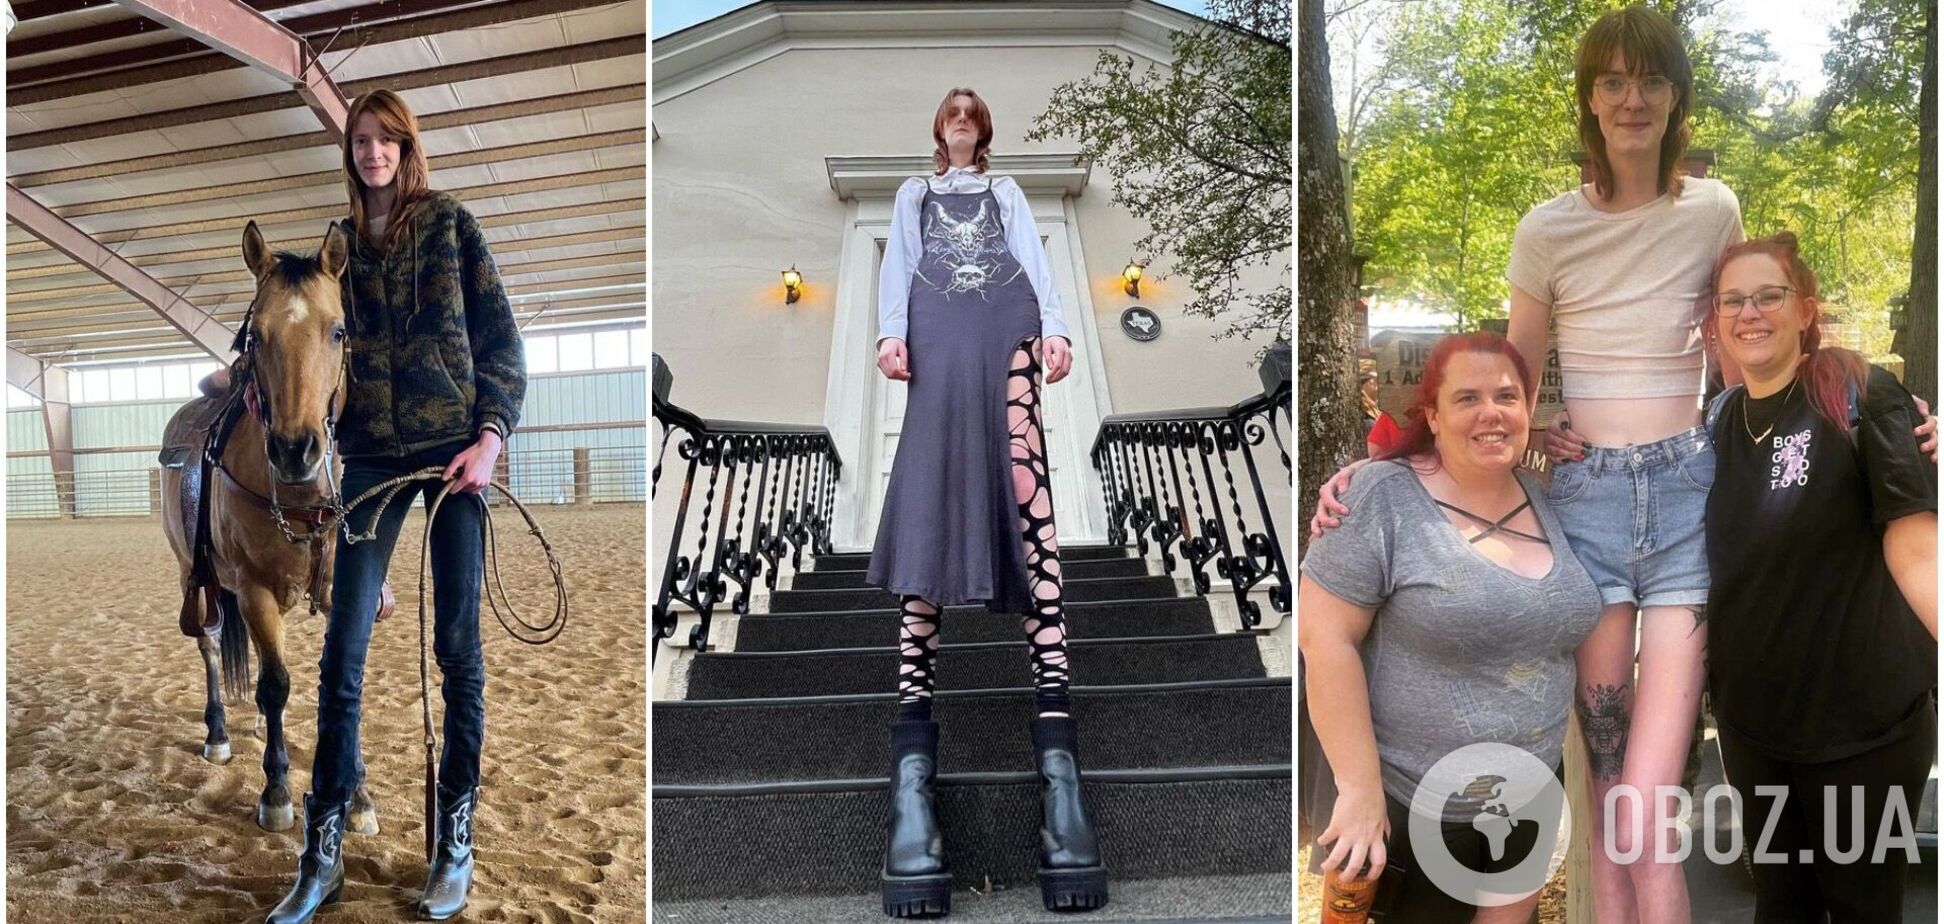 Ее называют 'гуманоидом'. Как выглядит 21-летняя девушка с самыми длинными ногами в мире и почему Мэйси Каррин мечтает избавиться от этого статуса